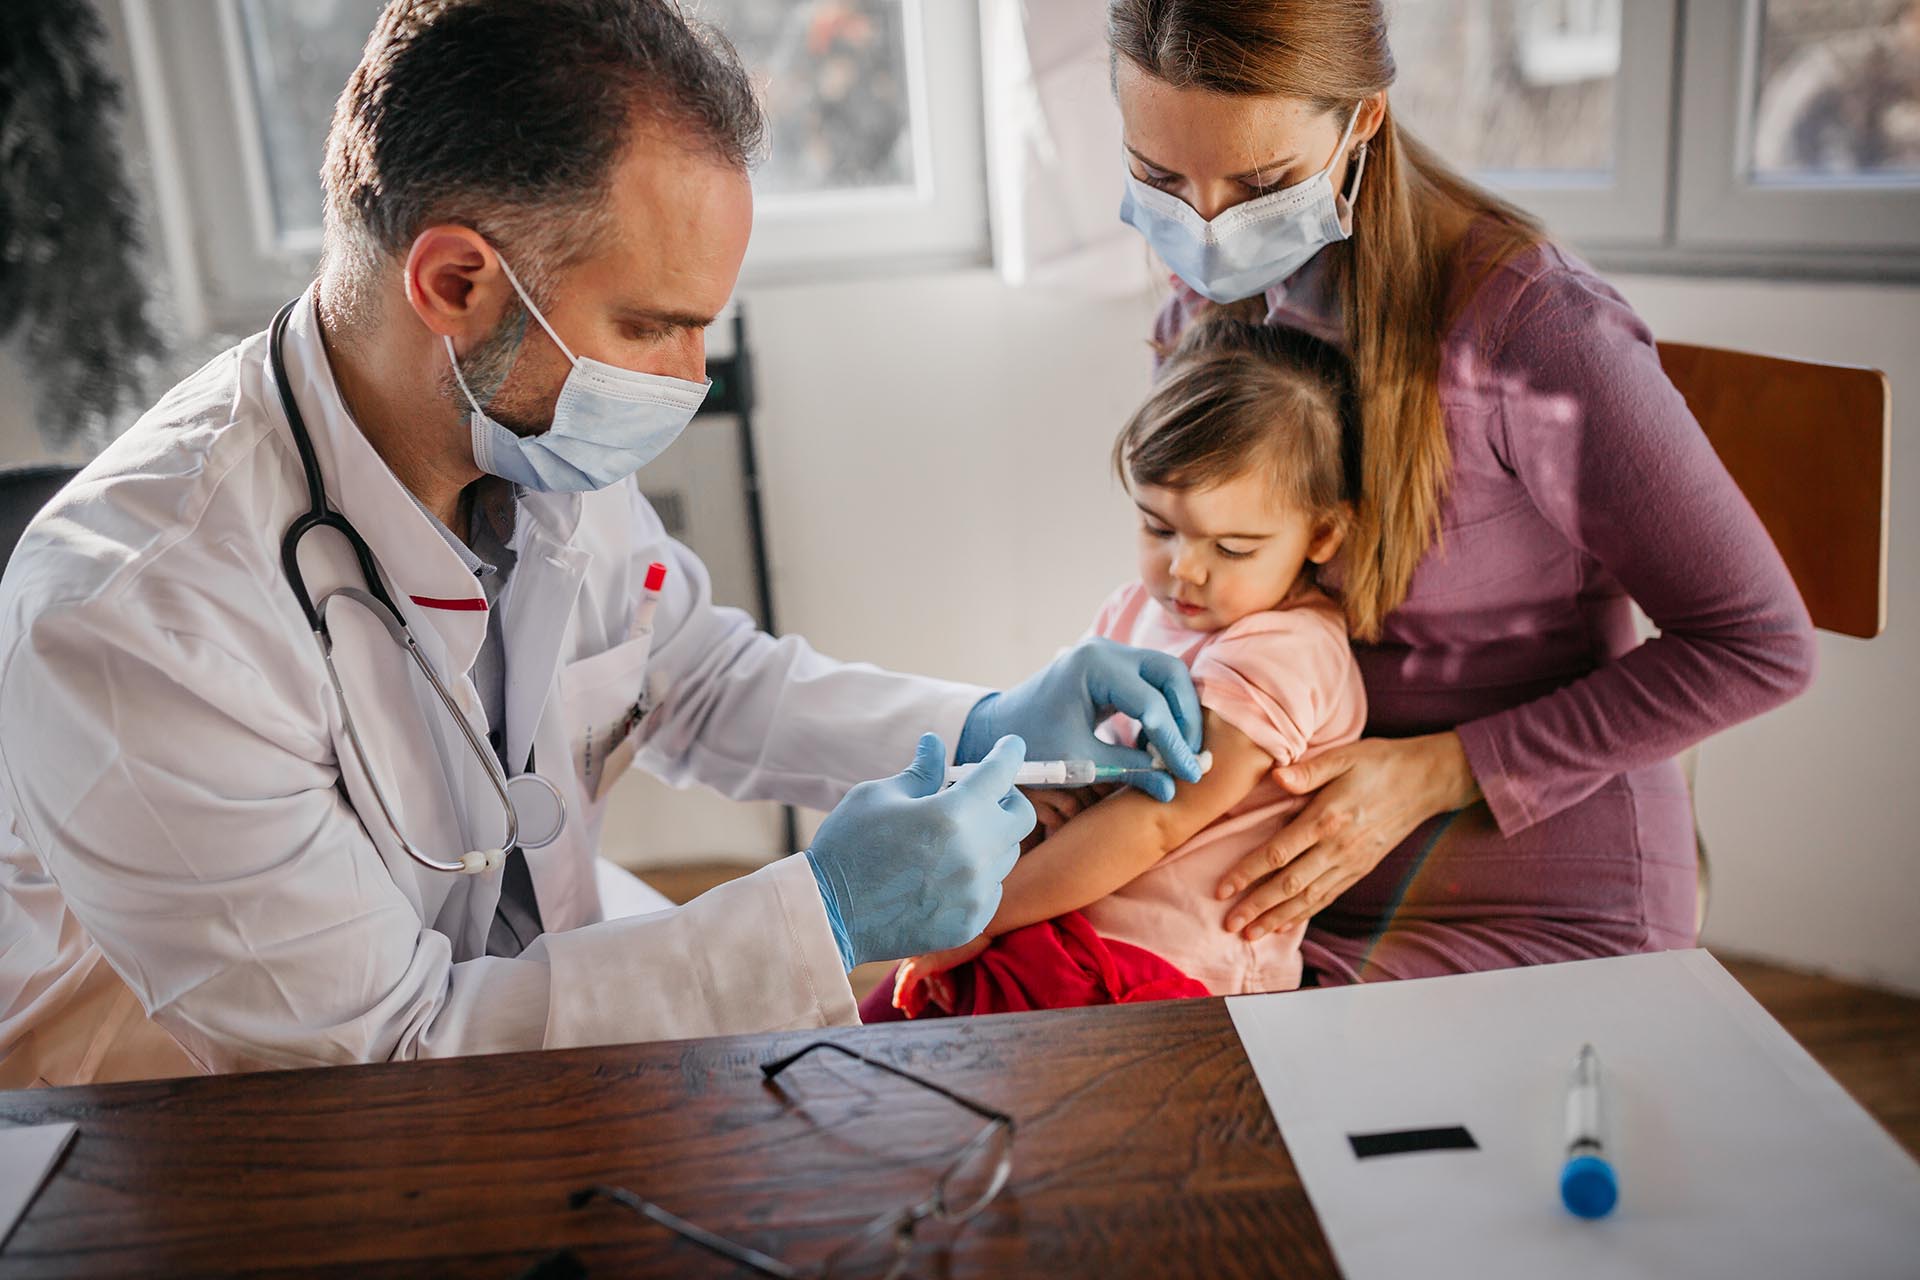 Moderna está evaluando el potencial de una vacuna de refuerzo para todos los niños de 6 meses en adelante, tanto para la versión original del coronavirus como para Ómicron 